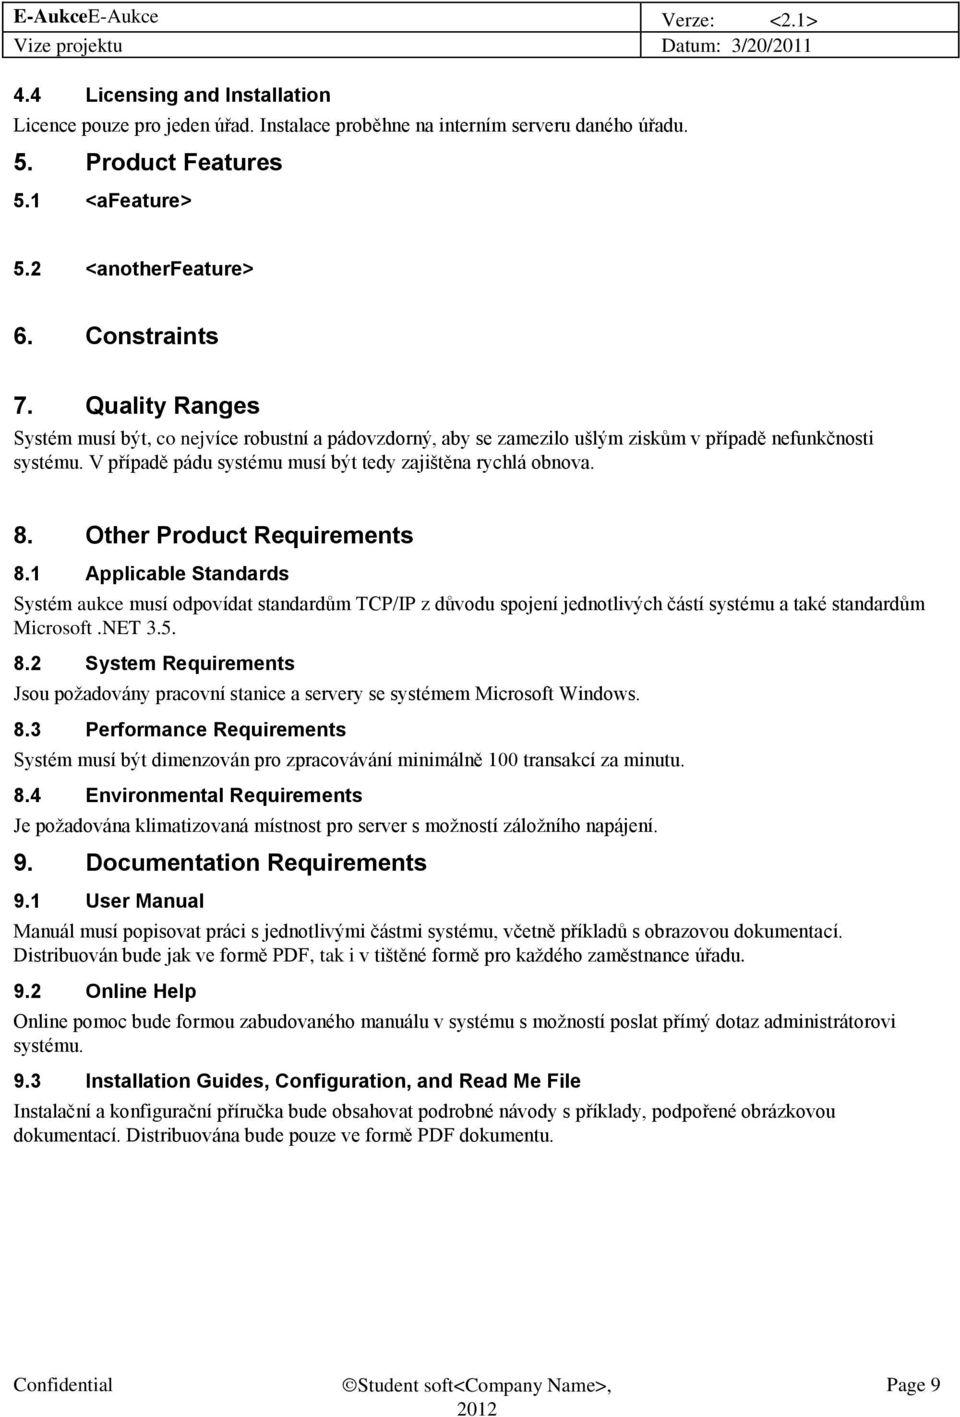 Other Product Requirements 8.1 Applicable Standards Systém aukce musí odpovídat standardům TCP/IP z důvodu spojení jednotlivých částí systému a také standardům Microsoft.NET 3.5. 8.2 System Requirements Jsou požadovány pracovní stanice a servery se systémem Microsoft Windows.